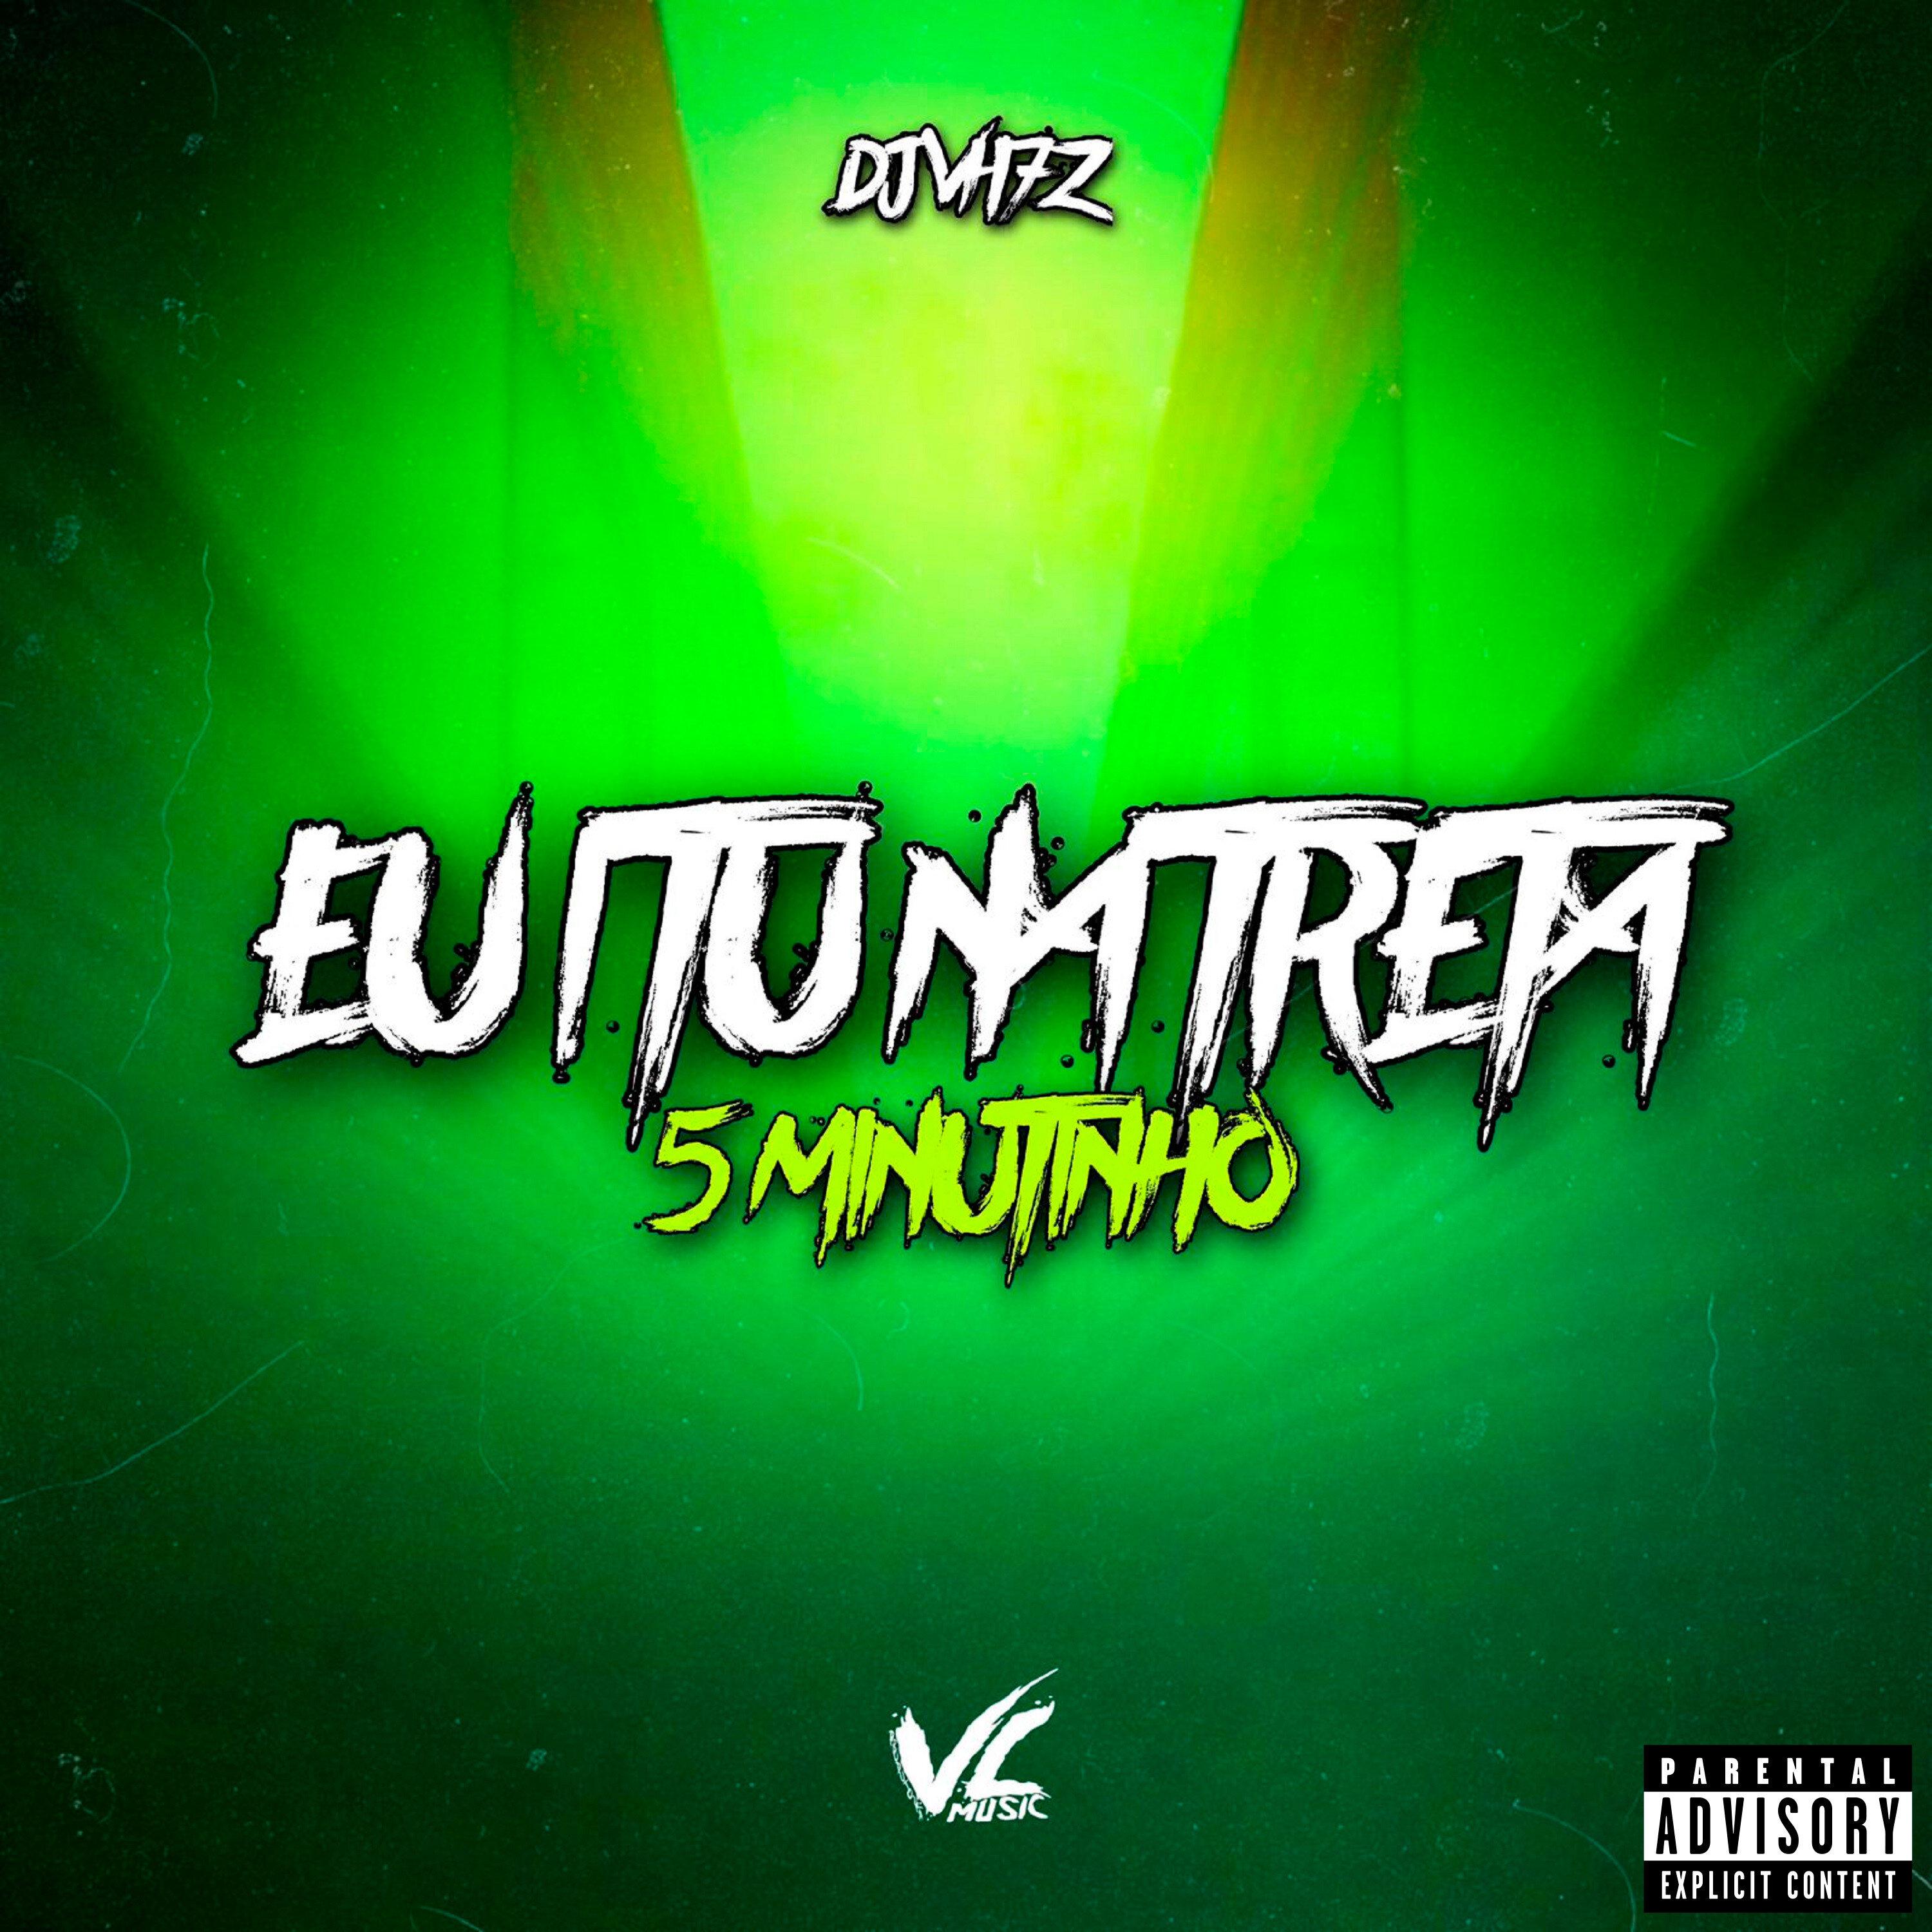 DJ VH7z - Eu I Tu na Treta 5 Minutinho ( feat. mc jhenny)